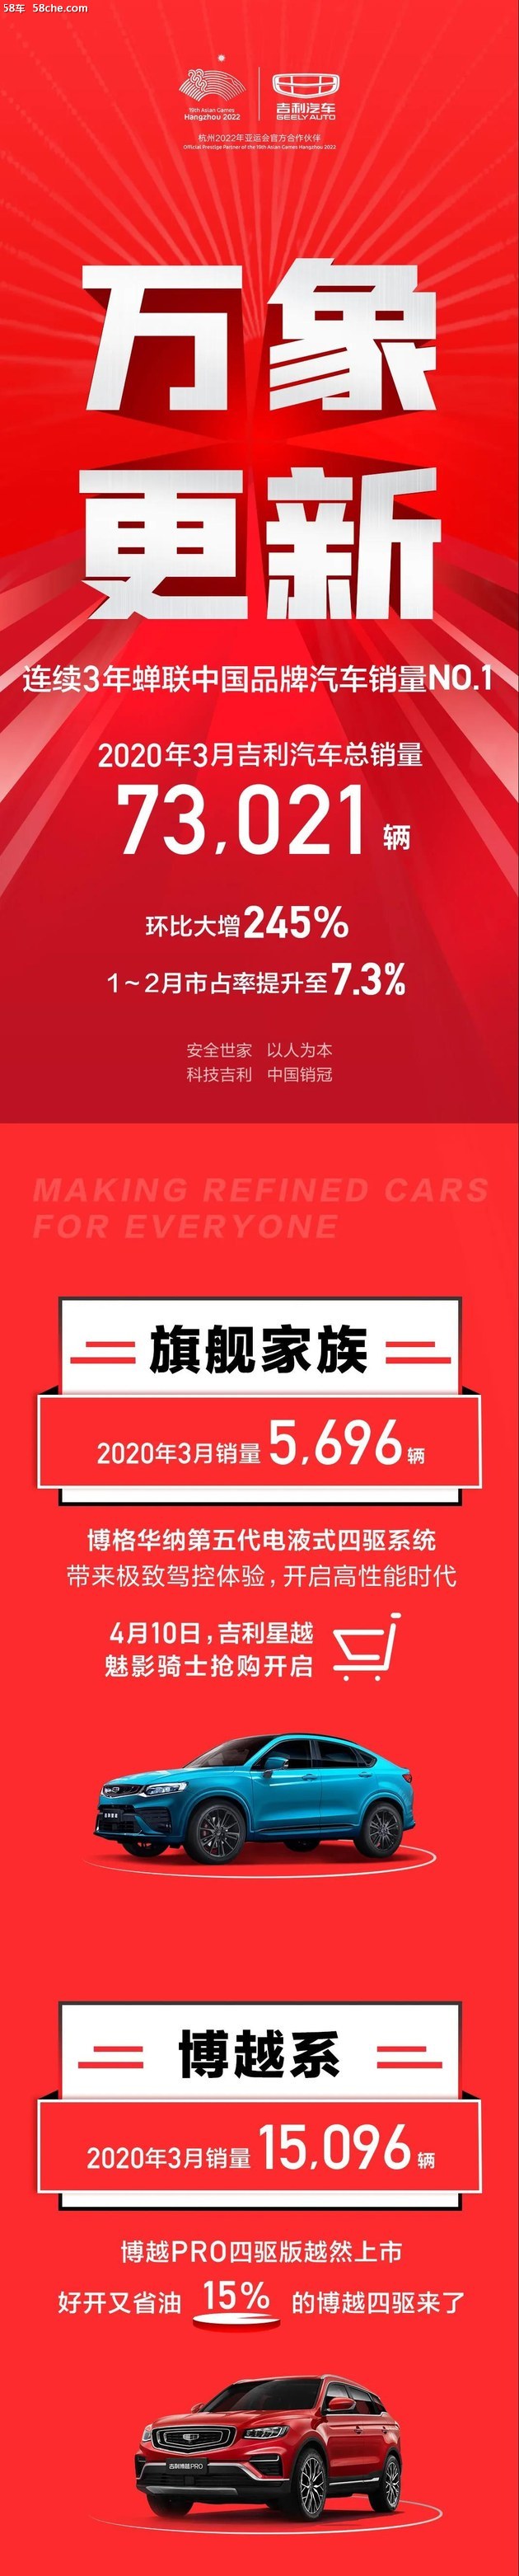 吉利汽车3月销量73021辆，市占率至7.3%